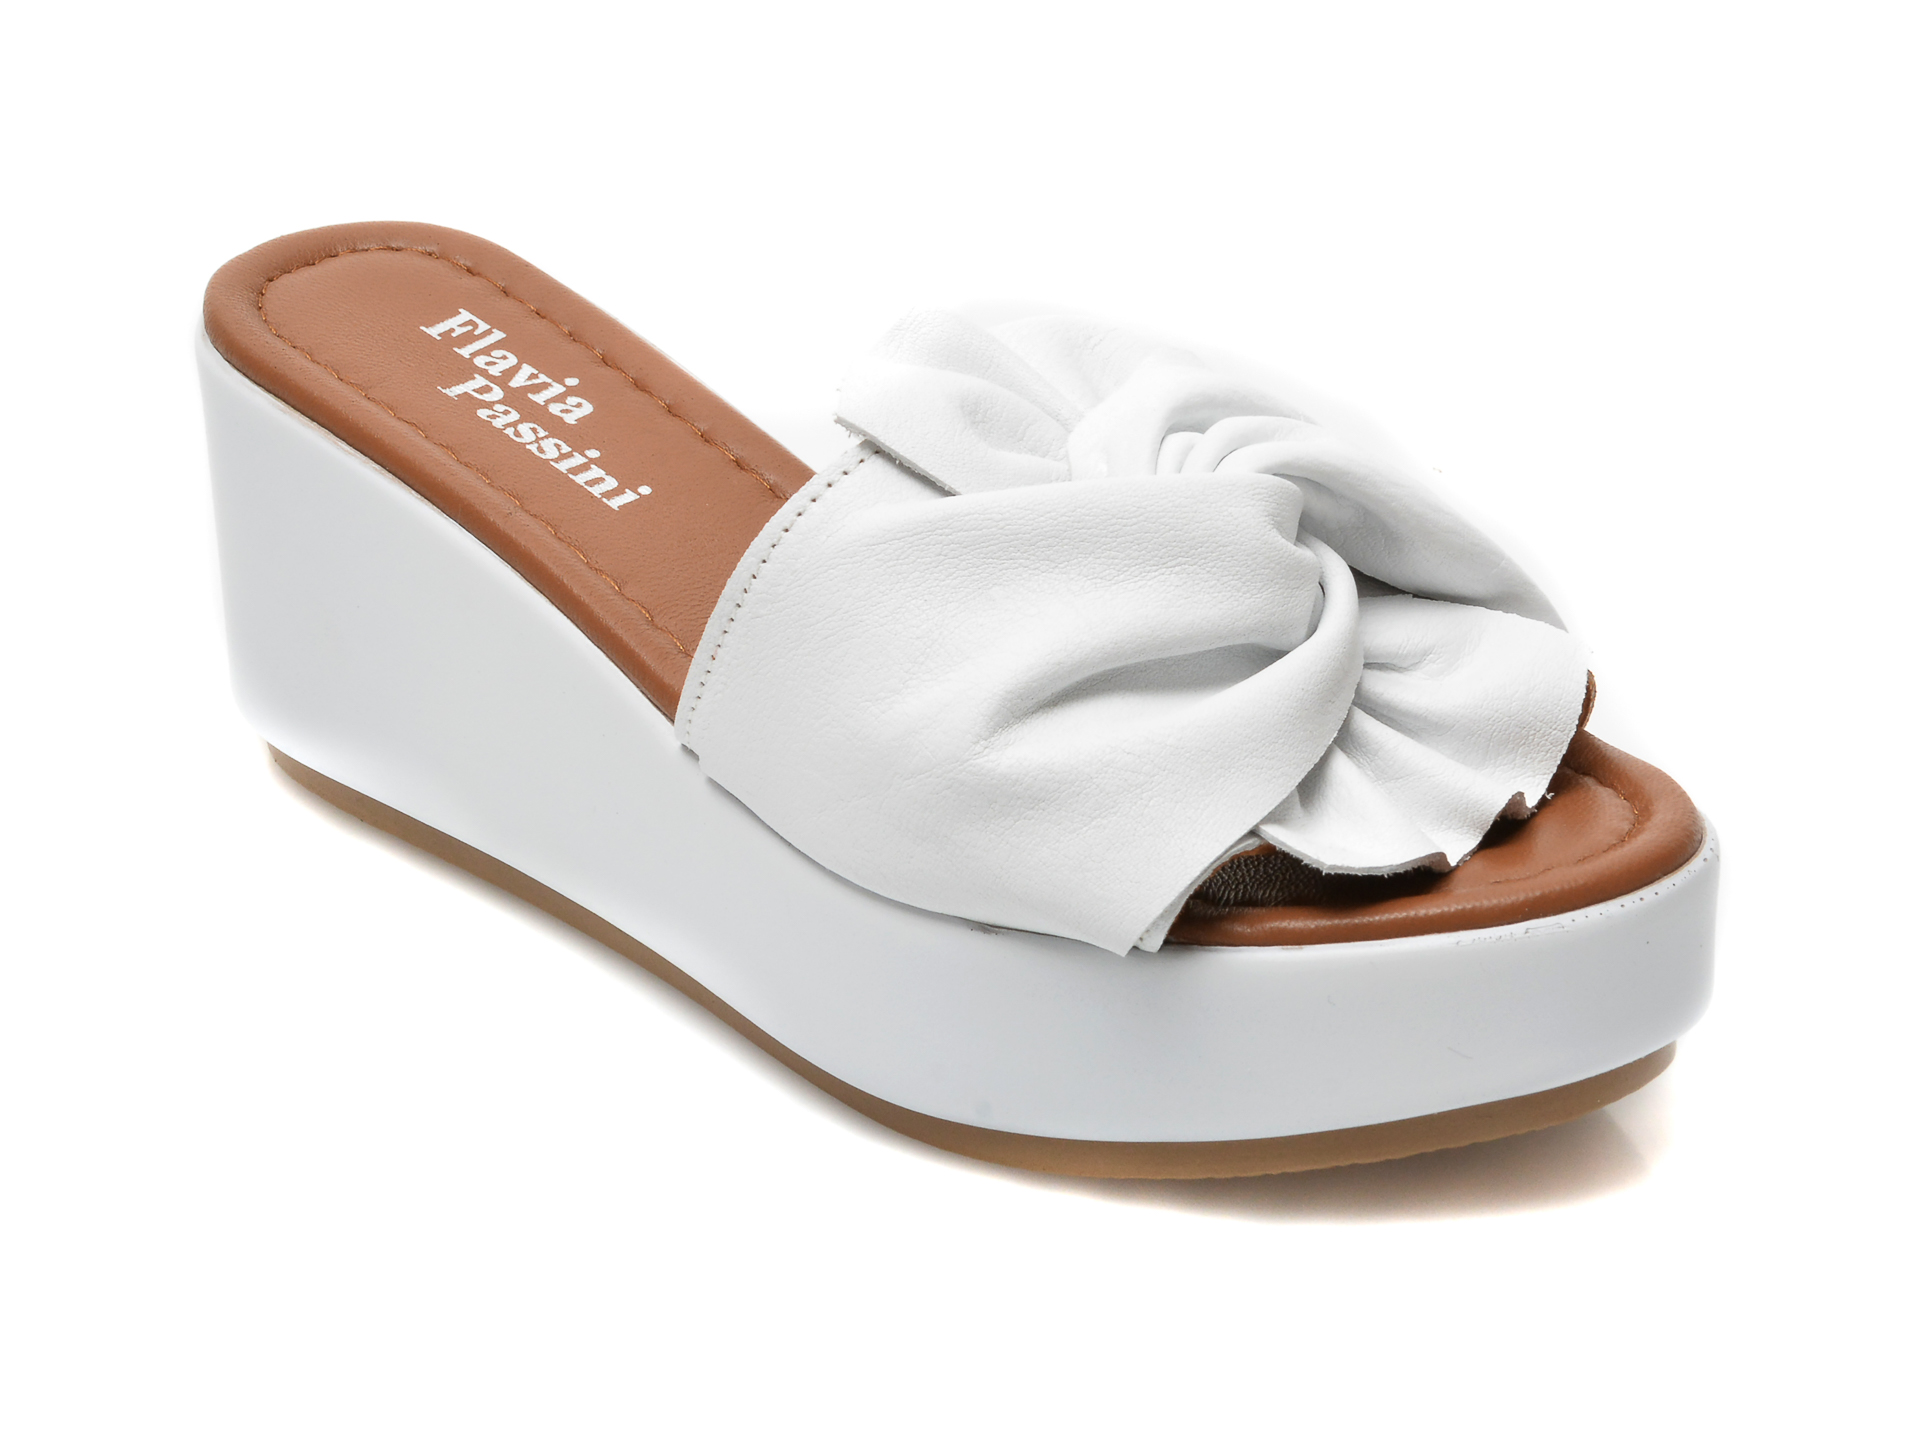 Papuci FLAVIA PASSINI albi, 810, din piele naturala Flavia Passini